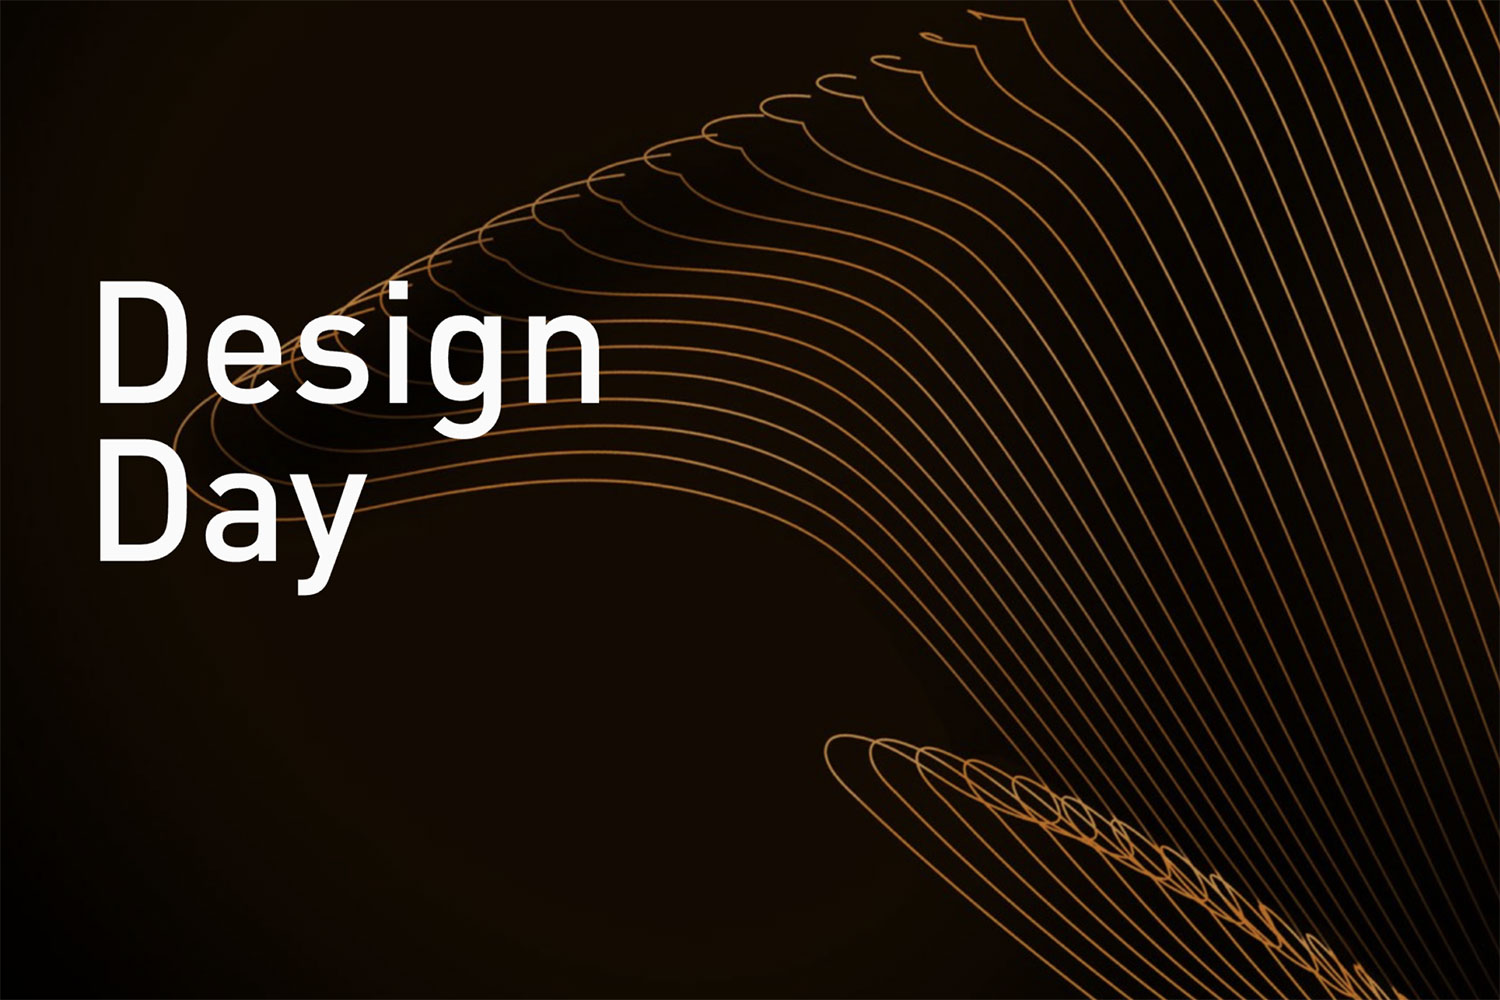 Vectorworks Design Day graphic